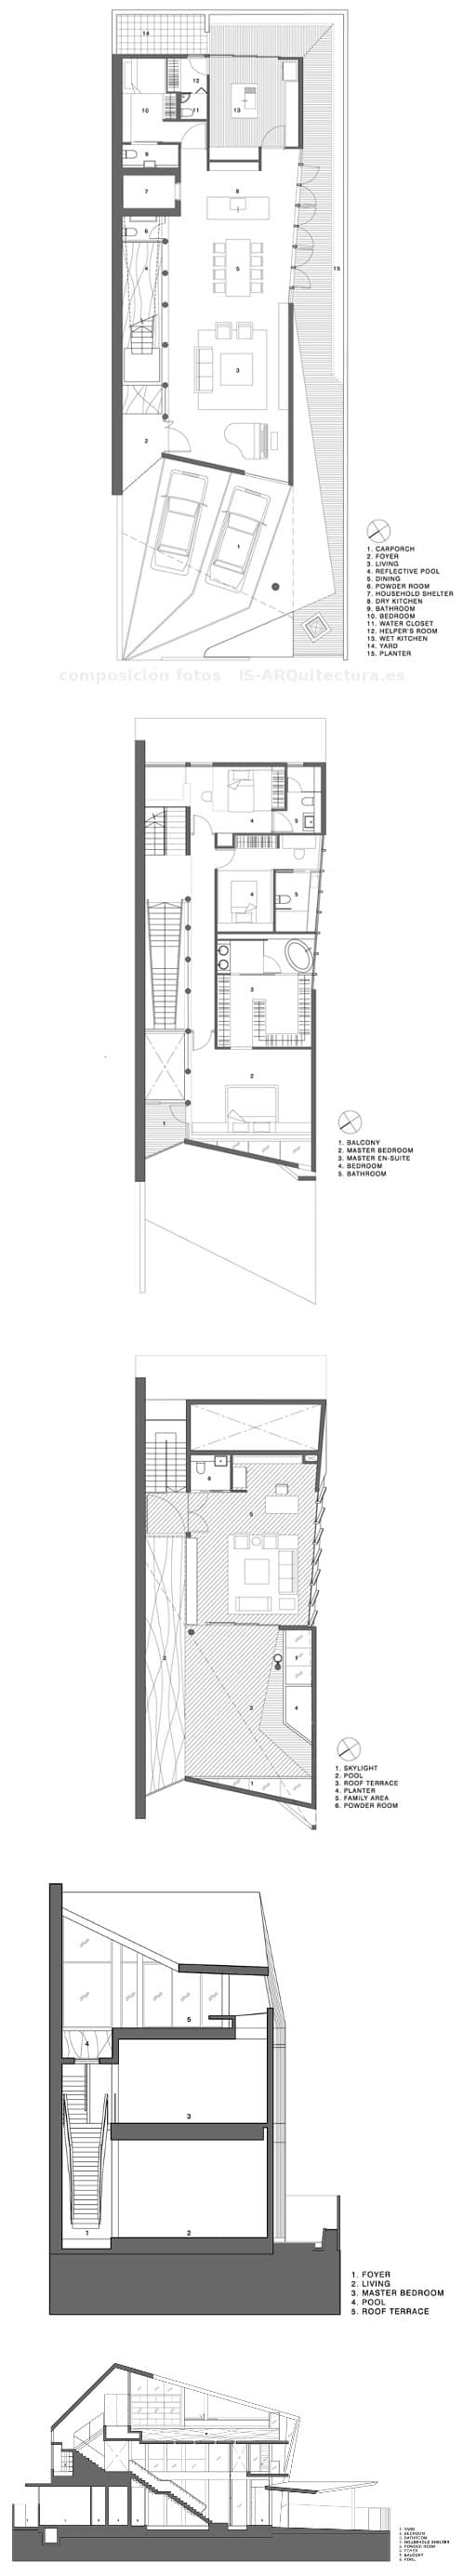 planos-secciones-casa-muro